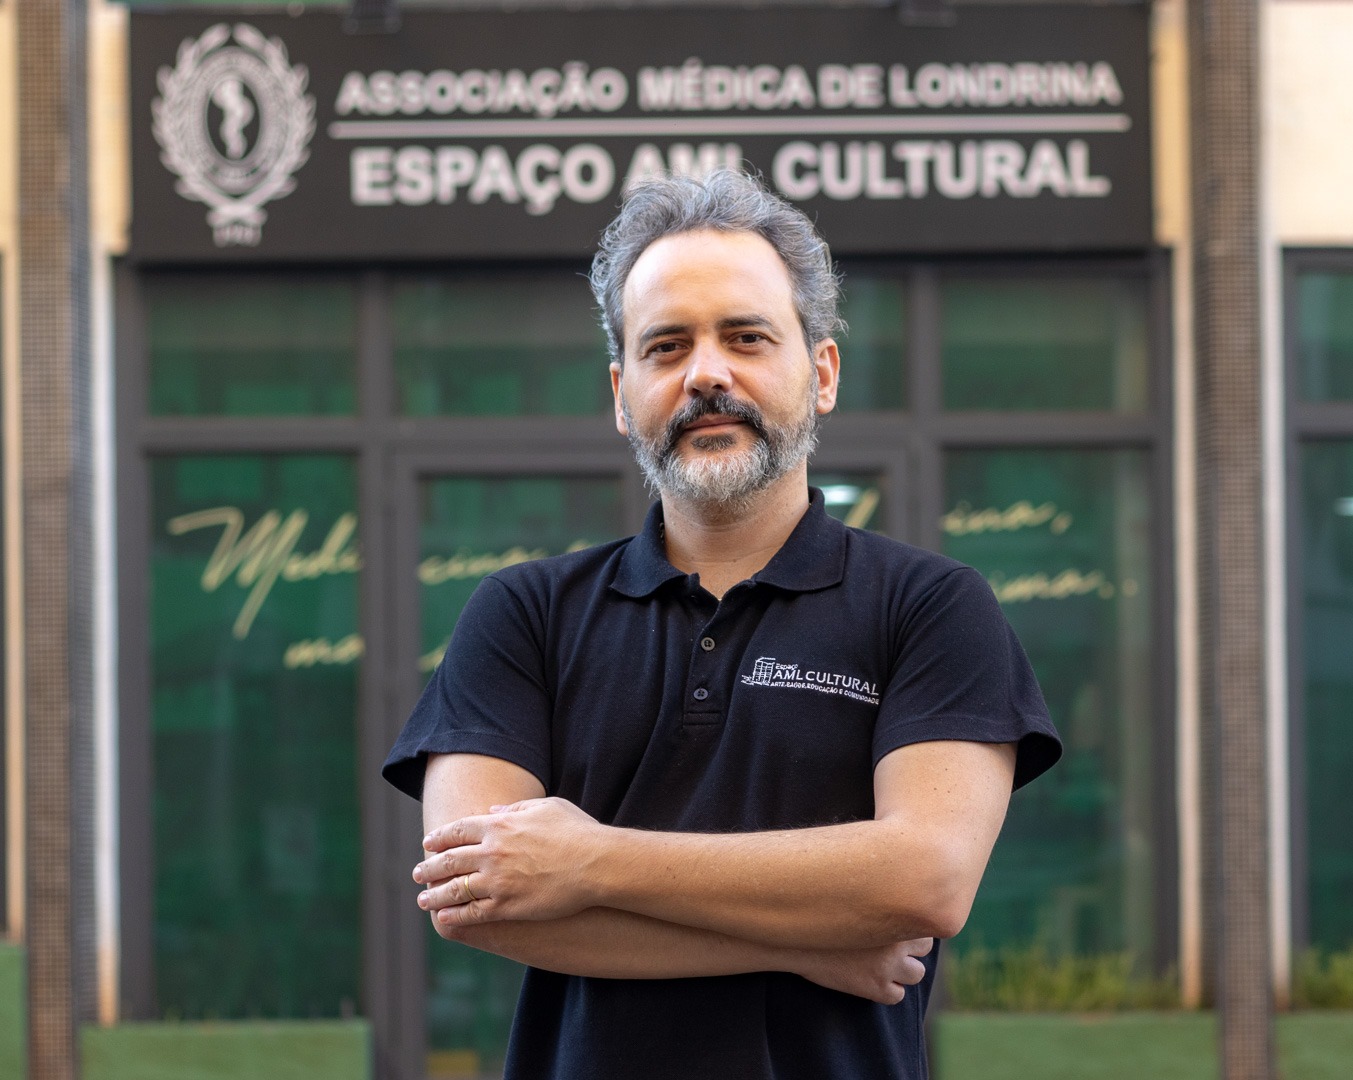 Associação Médica ganha cadeira no Conselho Municipal de Turismo de Londrina